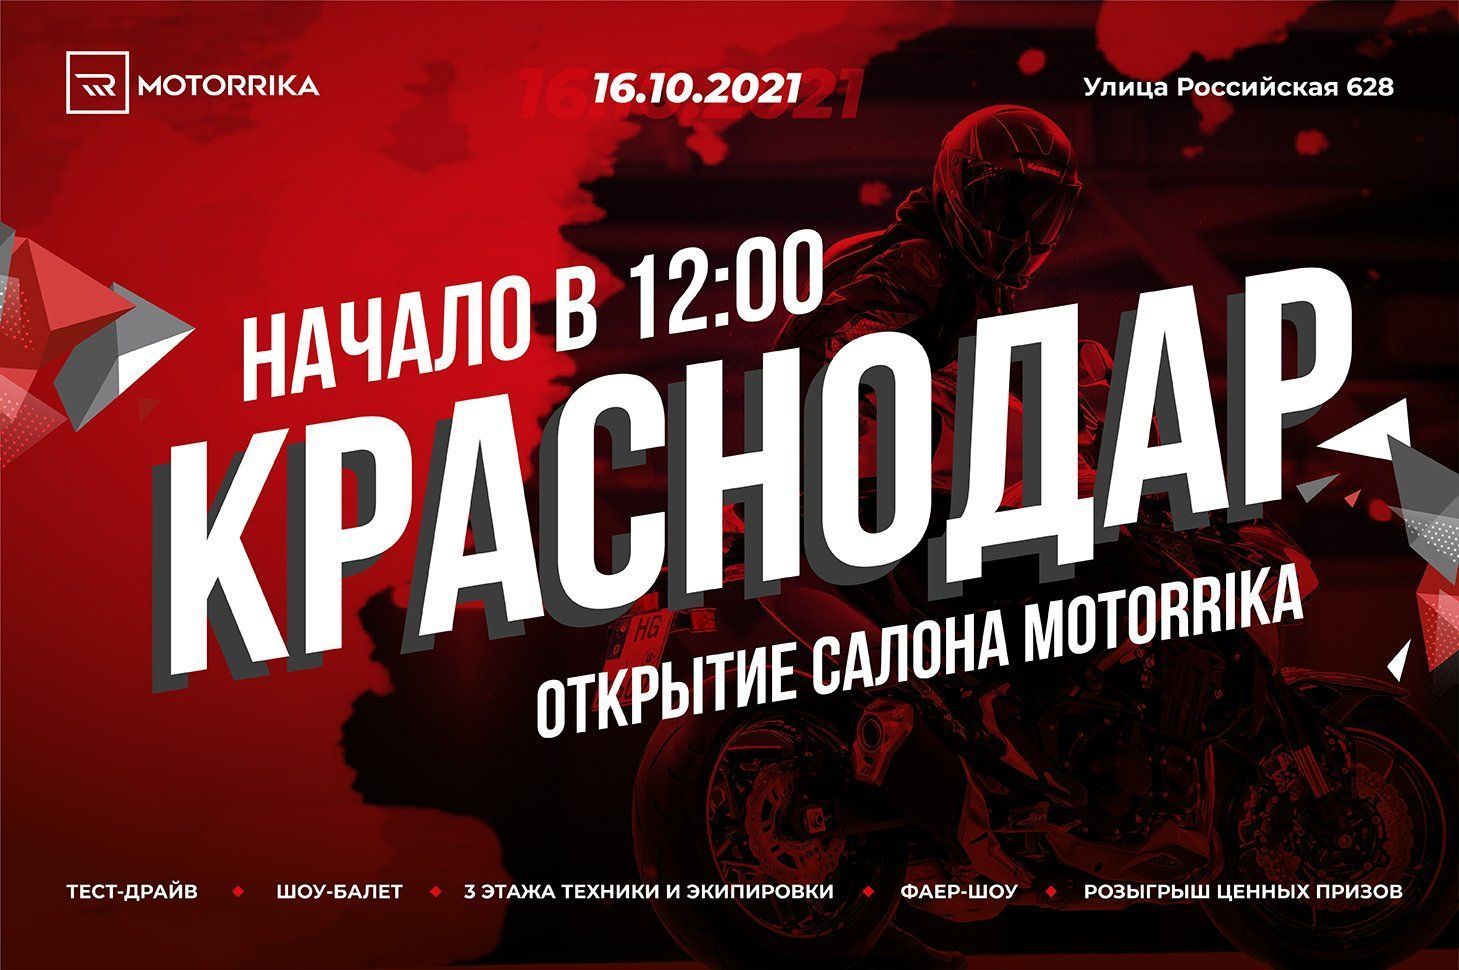 Открытие нового салона Motorrika в Краснодаре!